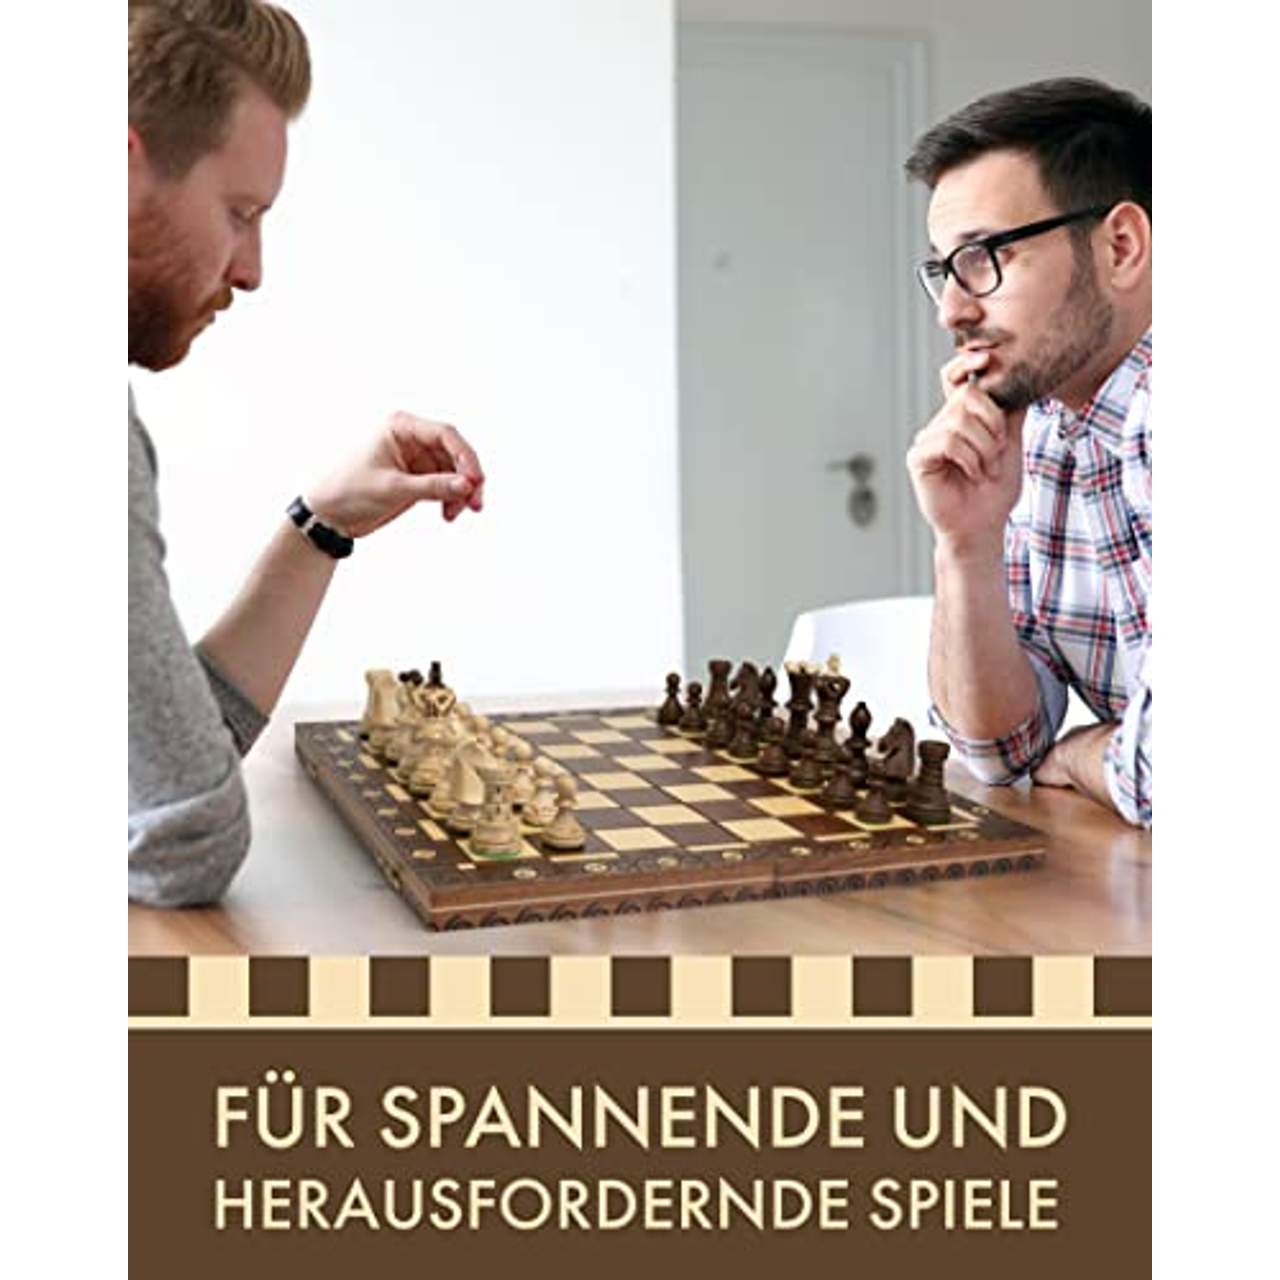 Chessebook Schachspiel aus Holz 52 x 52 cm